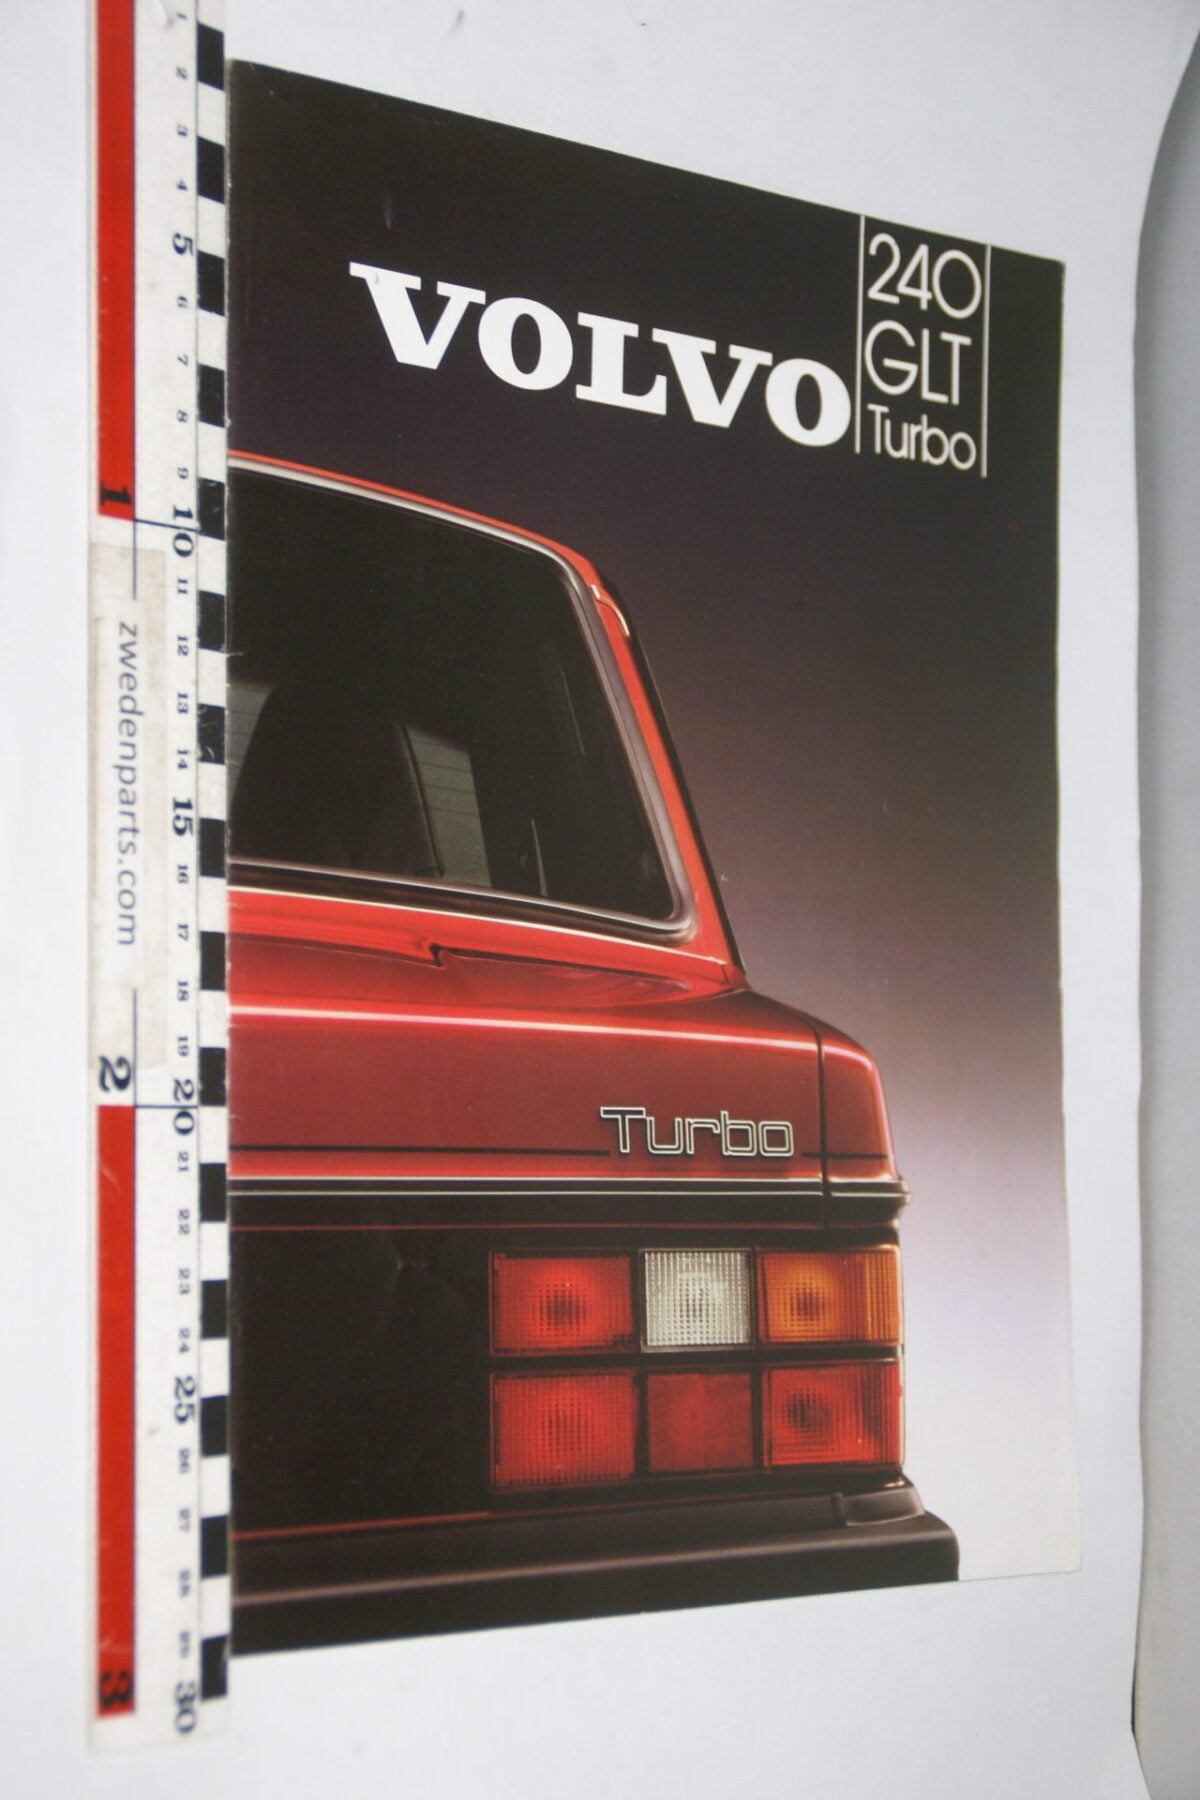 DSC07925 1983 brochure Volvo 240GLT Turbo nr MSPV 125-83, Svenska